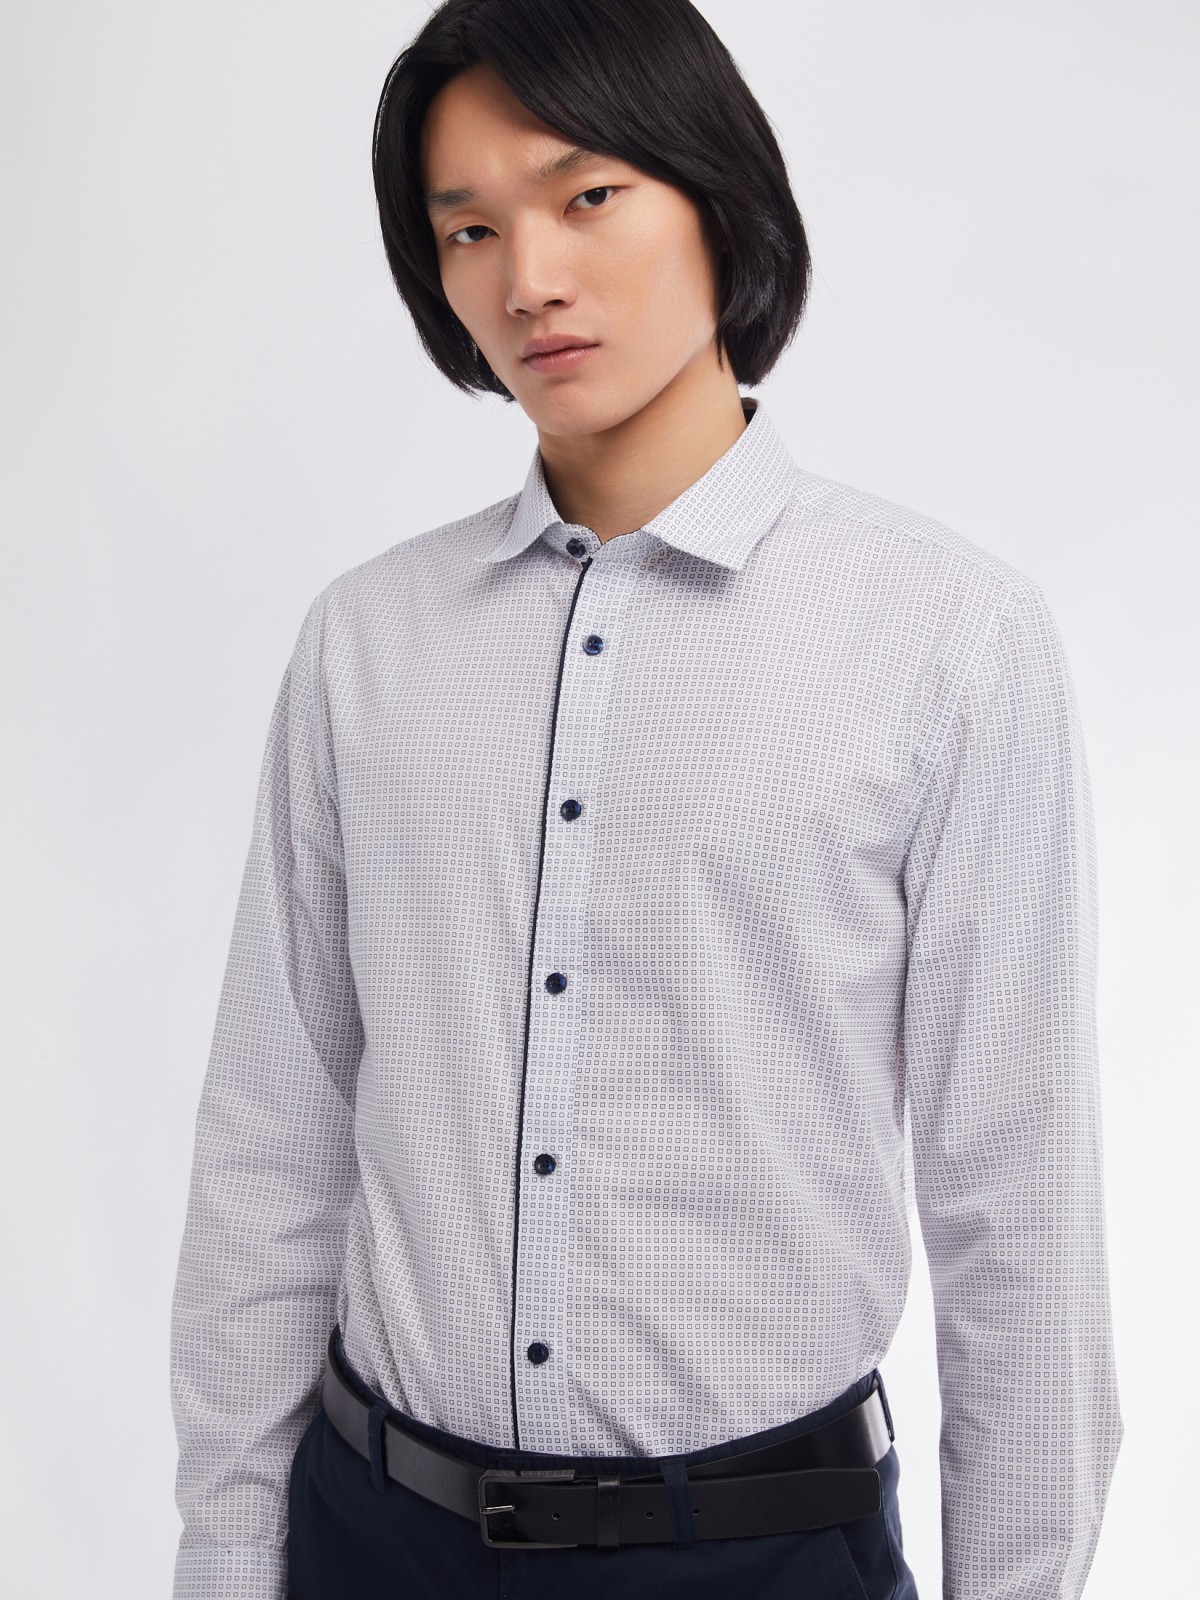 Офисная полуприталенная рубашка с мелким принтом zolla 01411217Y033, цвет белый, размер M